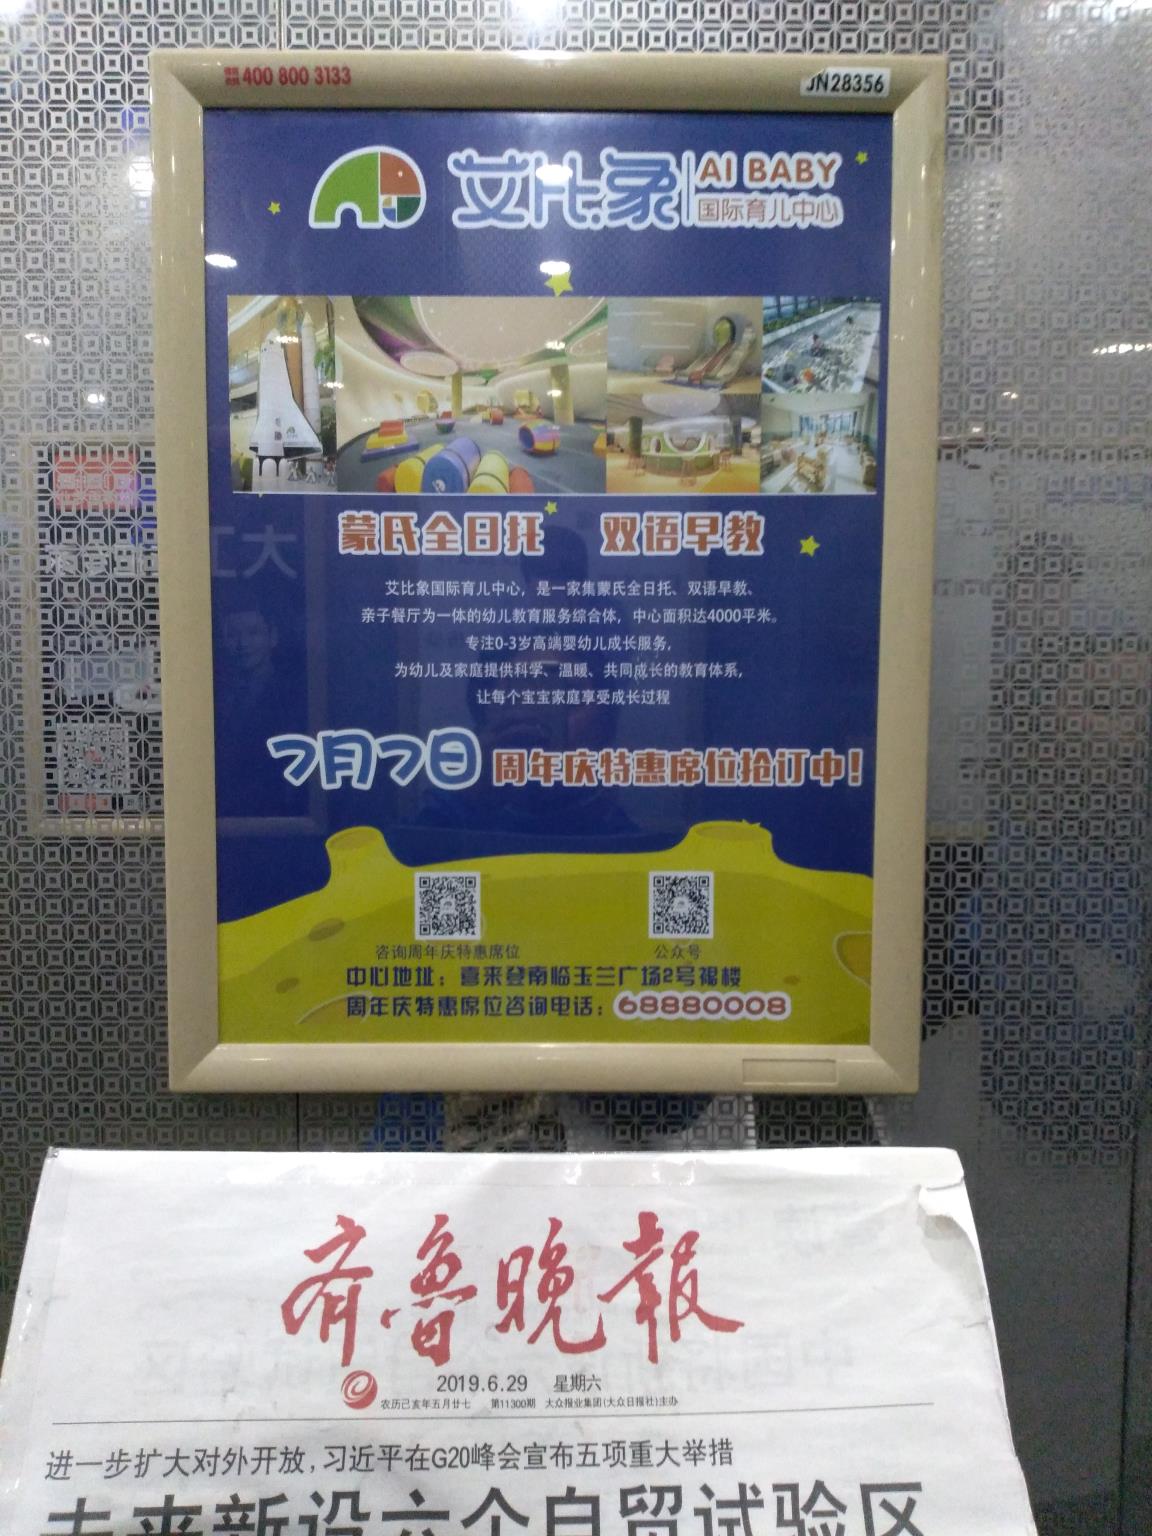 艾比象国际育儿中心（济南电梯框架广告投放1856006492）